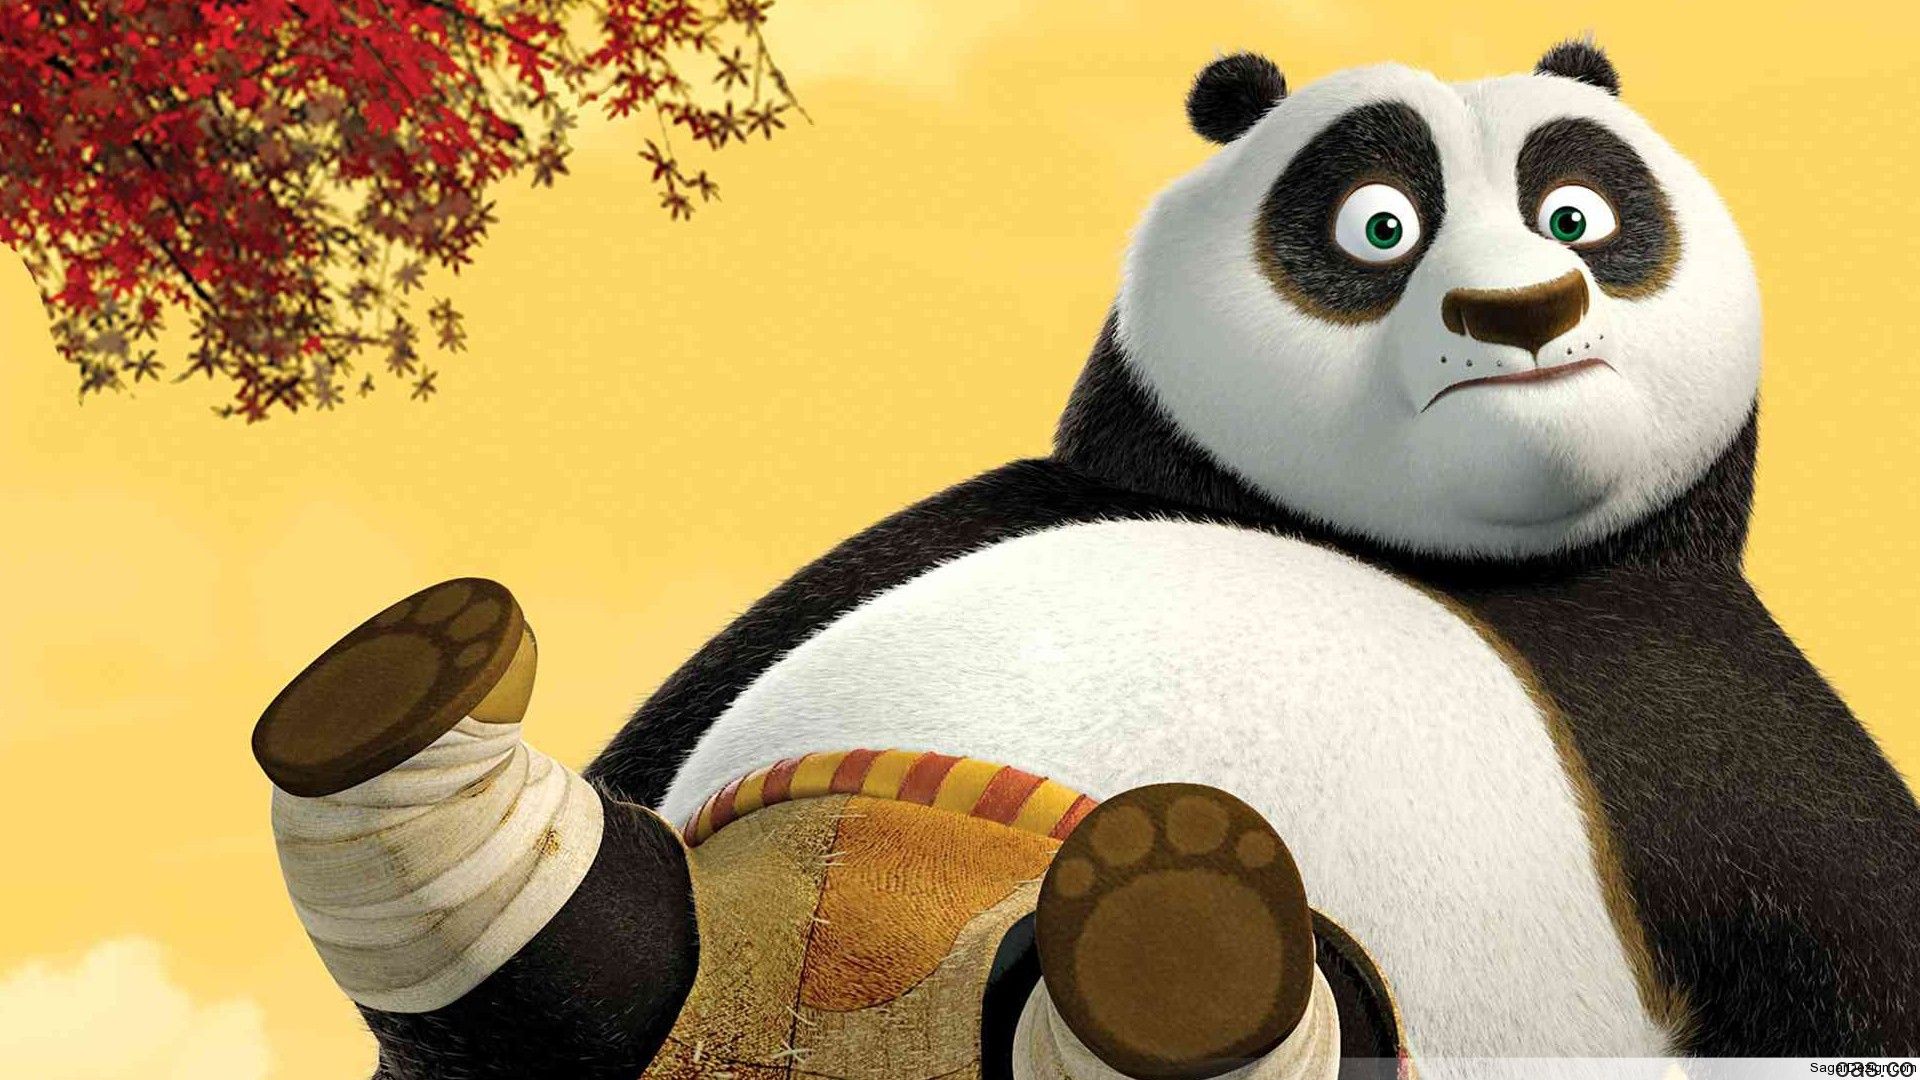 Panda, wallpaper, animated, movie